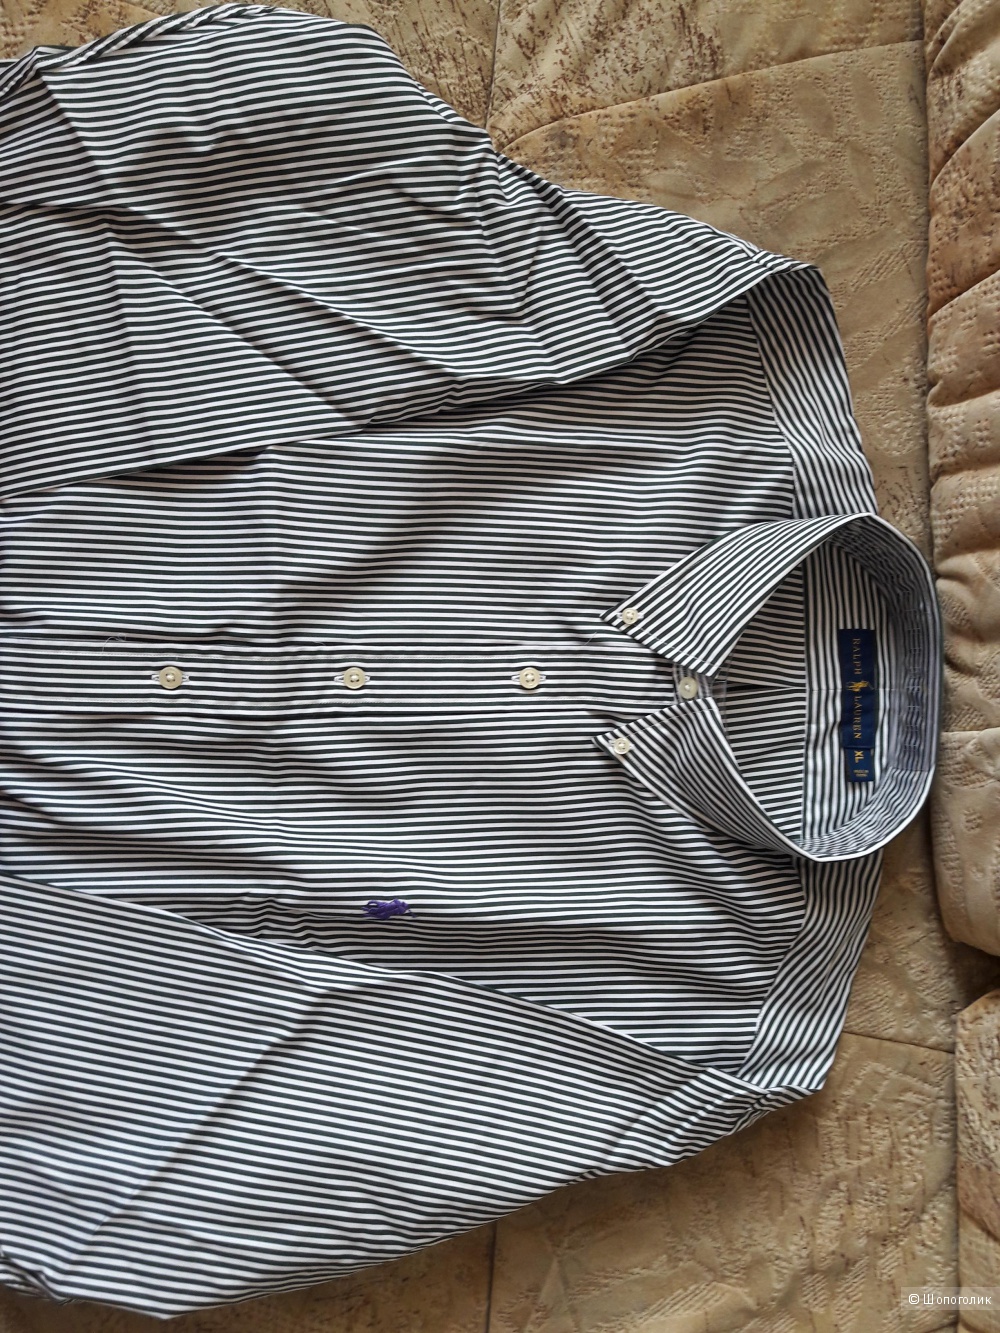 Мужская рубашка Ralph Lauren, XL, оригинал